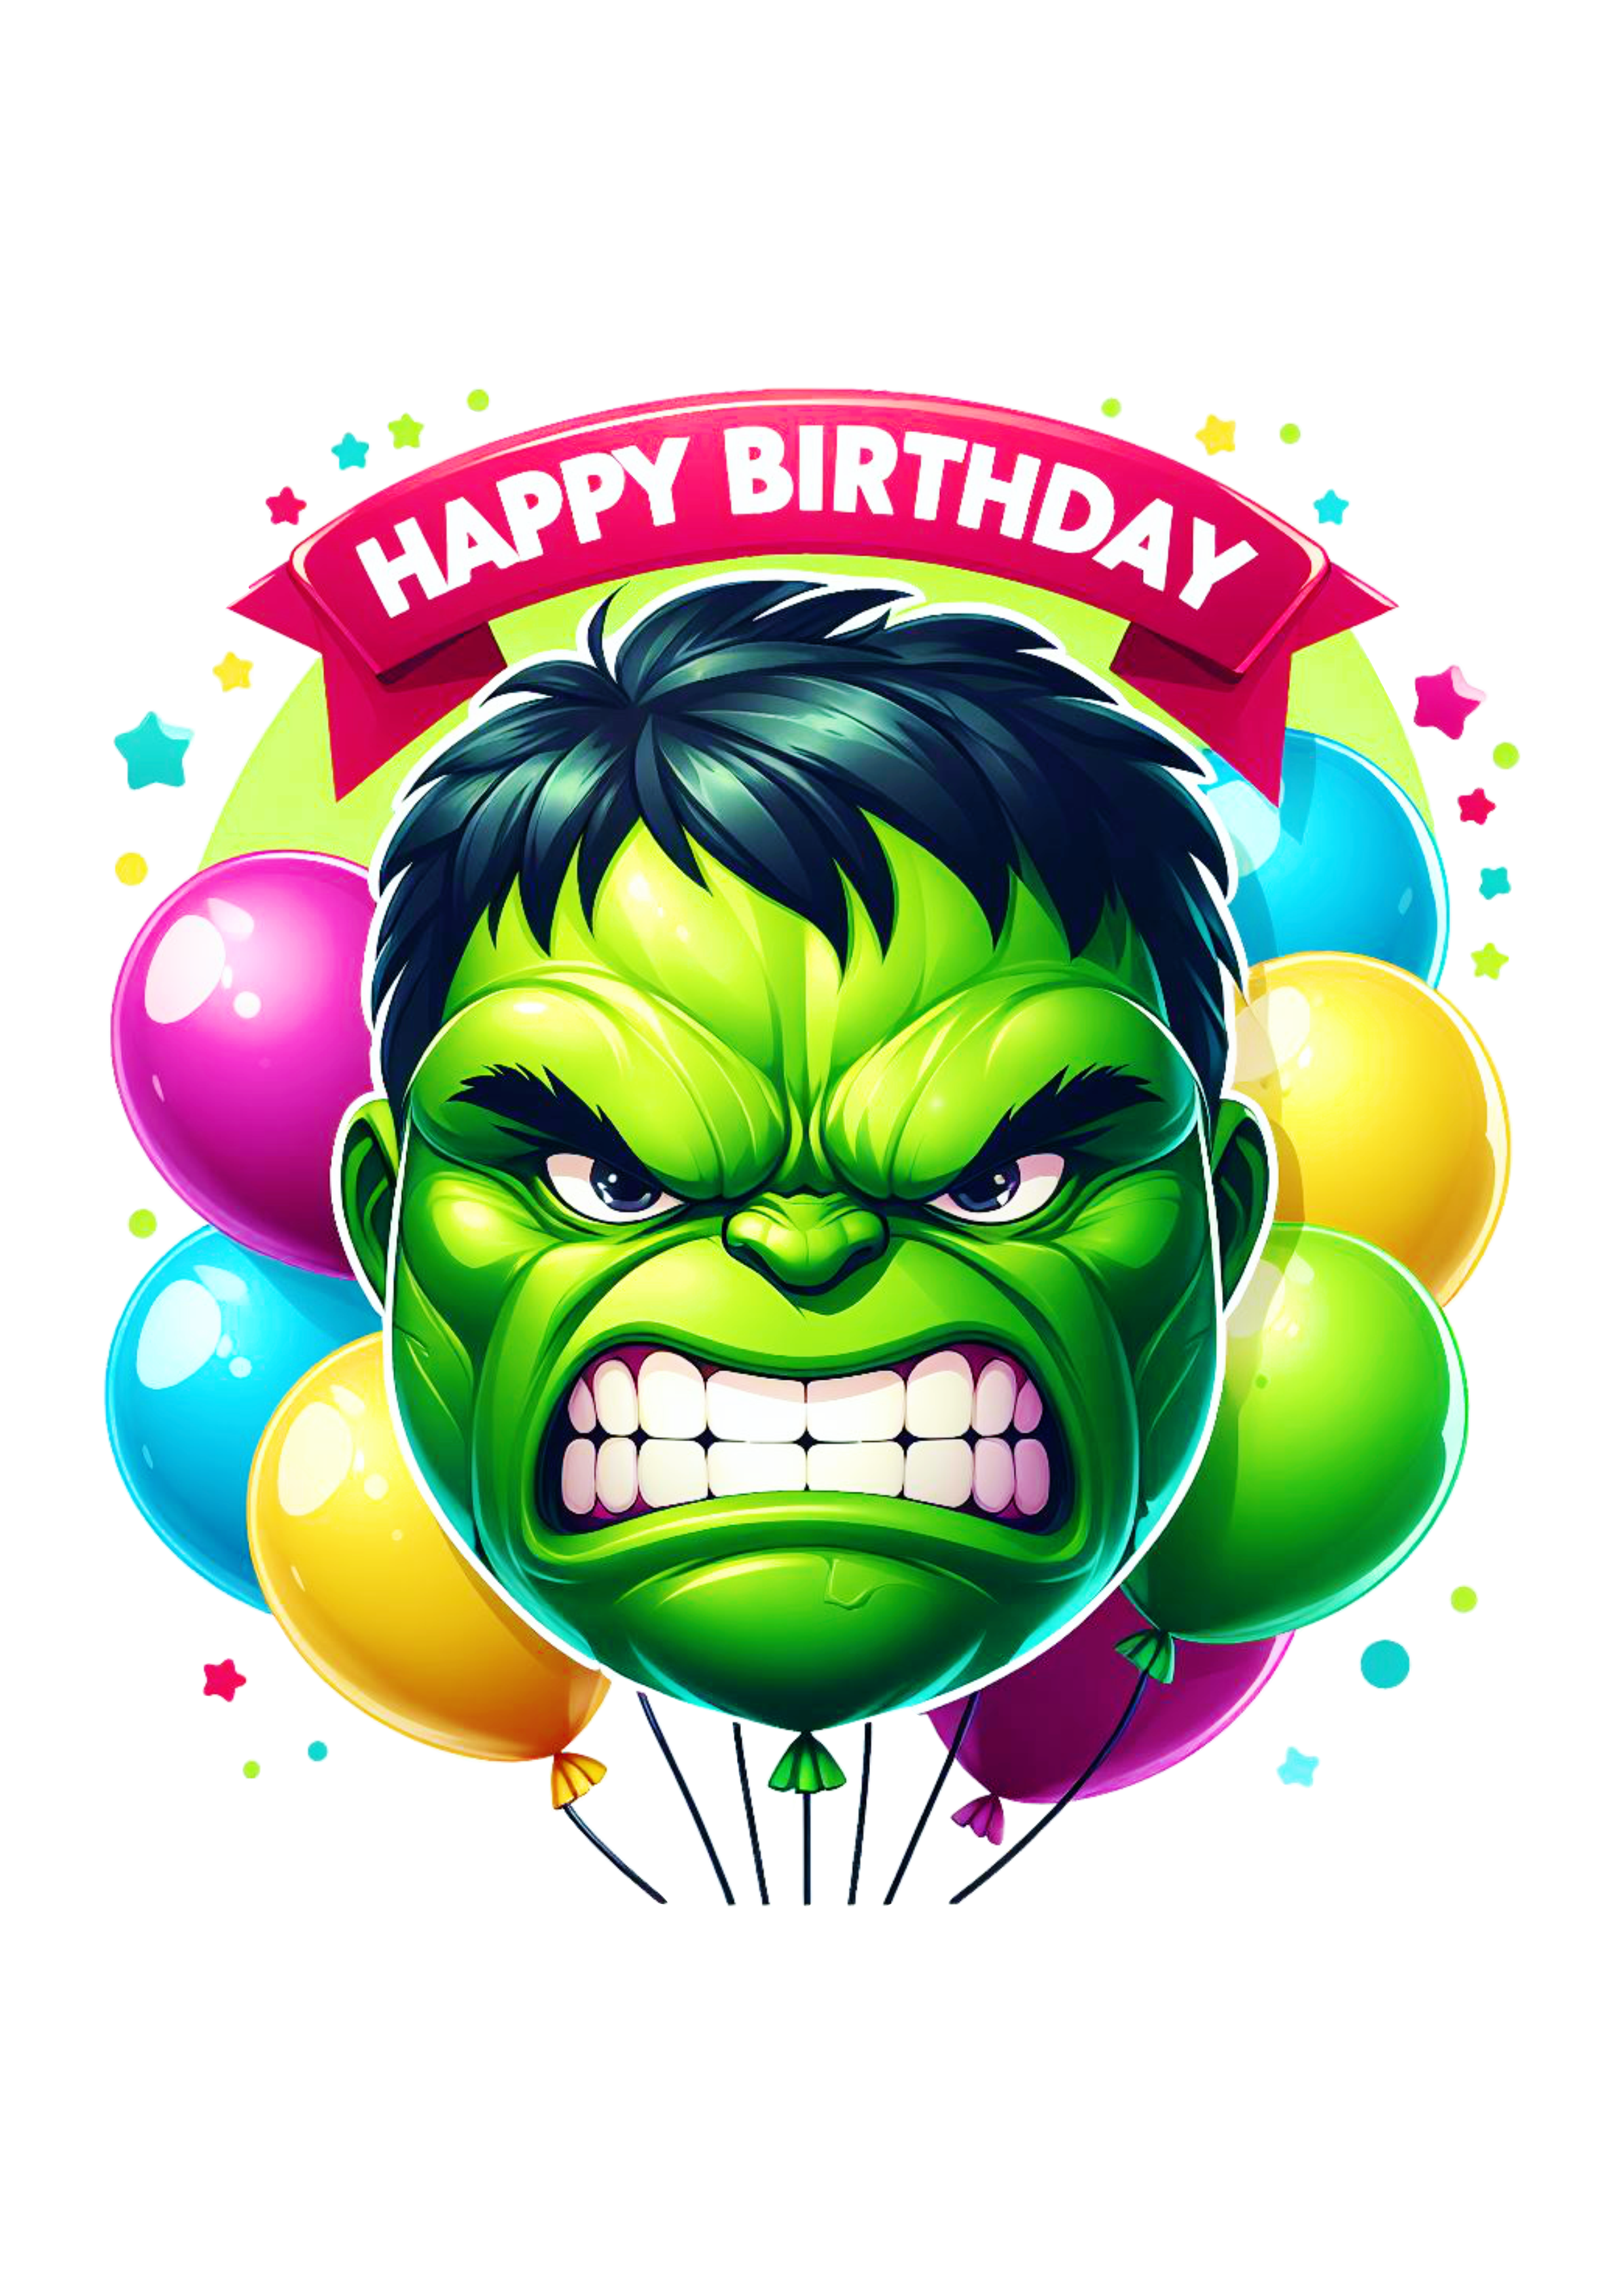 Hulk imagem para decoração de aniversário png